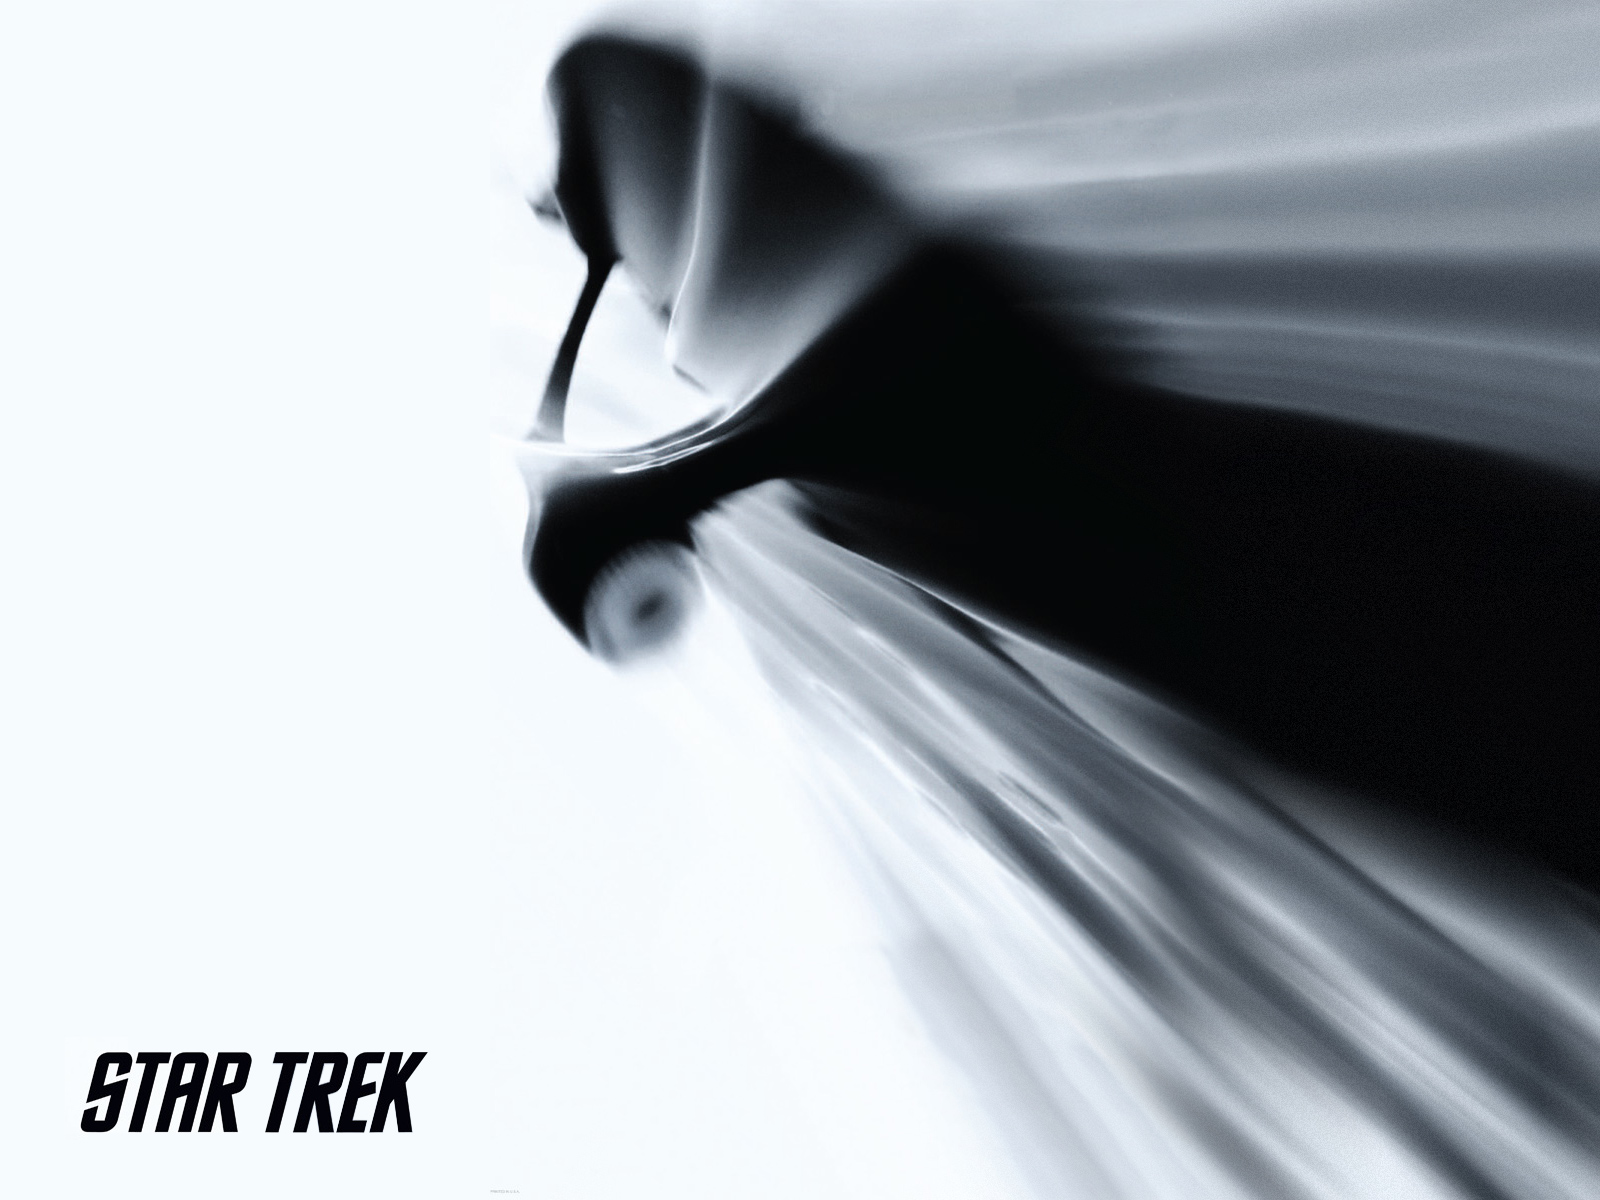 Star Trek 2009 Movie Wallpaper